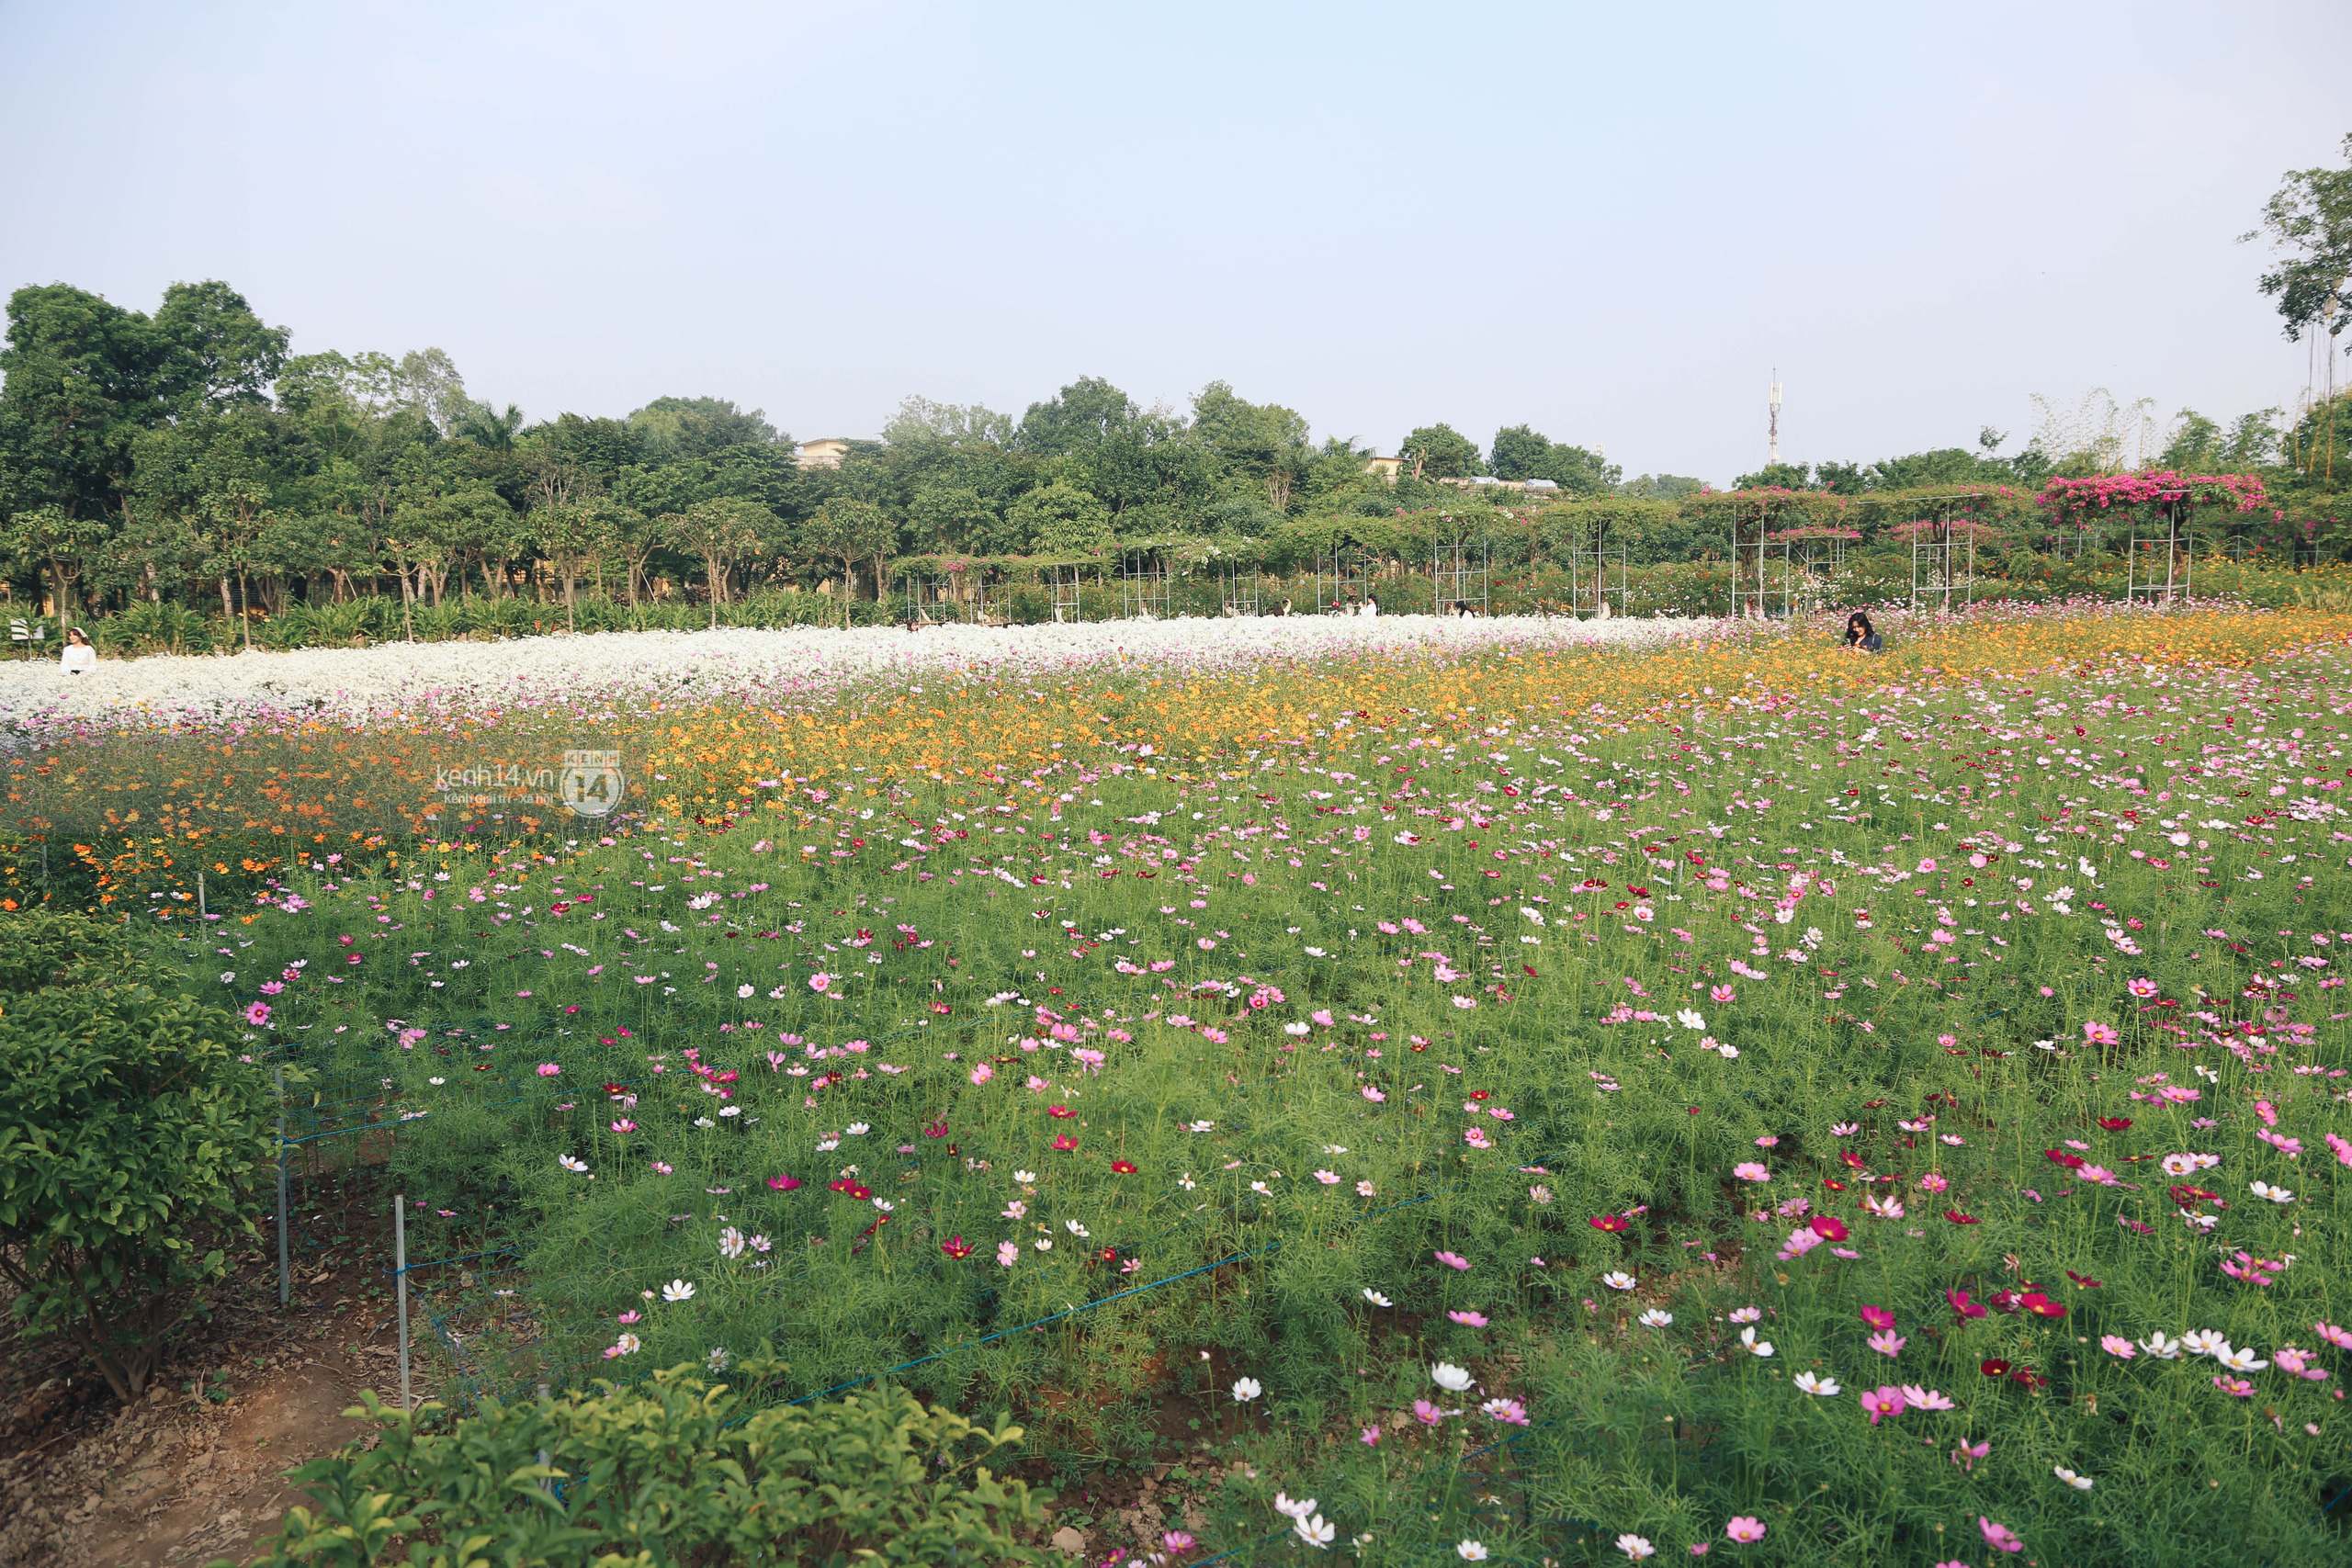 Trường ĐH rộng gần 200ha có vườn hoa đẹp nhất mùa đông Hà Nội, nhiều góc sống ảo cực chill chỉ với 25K - Ảnh 9.